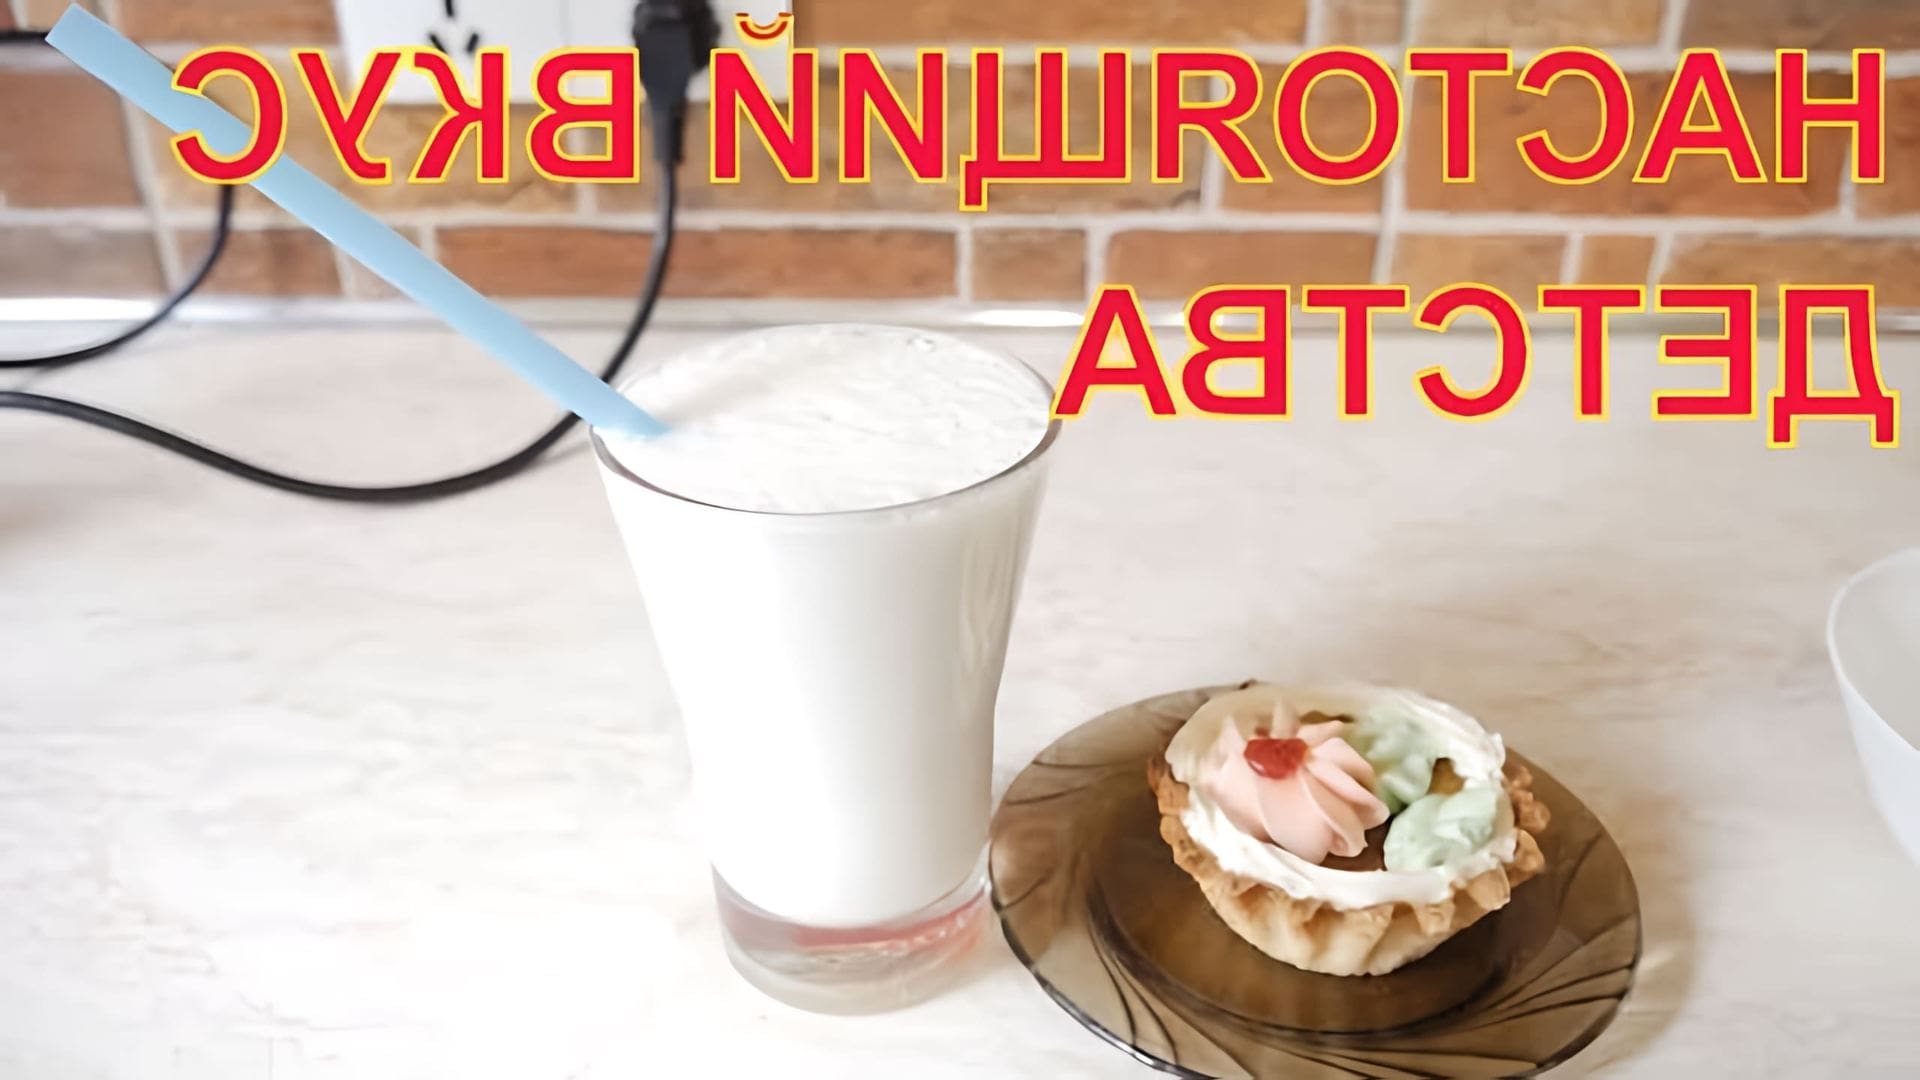 Видео посвящено воссозданию аутентичного молочного коктейля советской эпохи в соответствии со стандартами ГОСТ